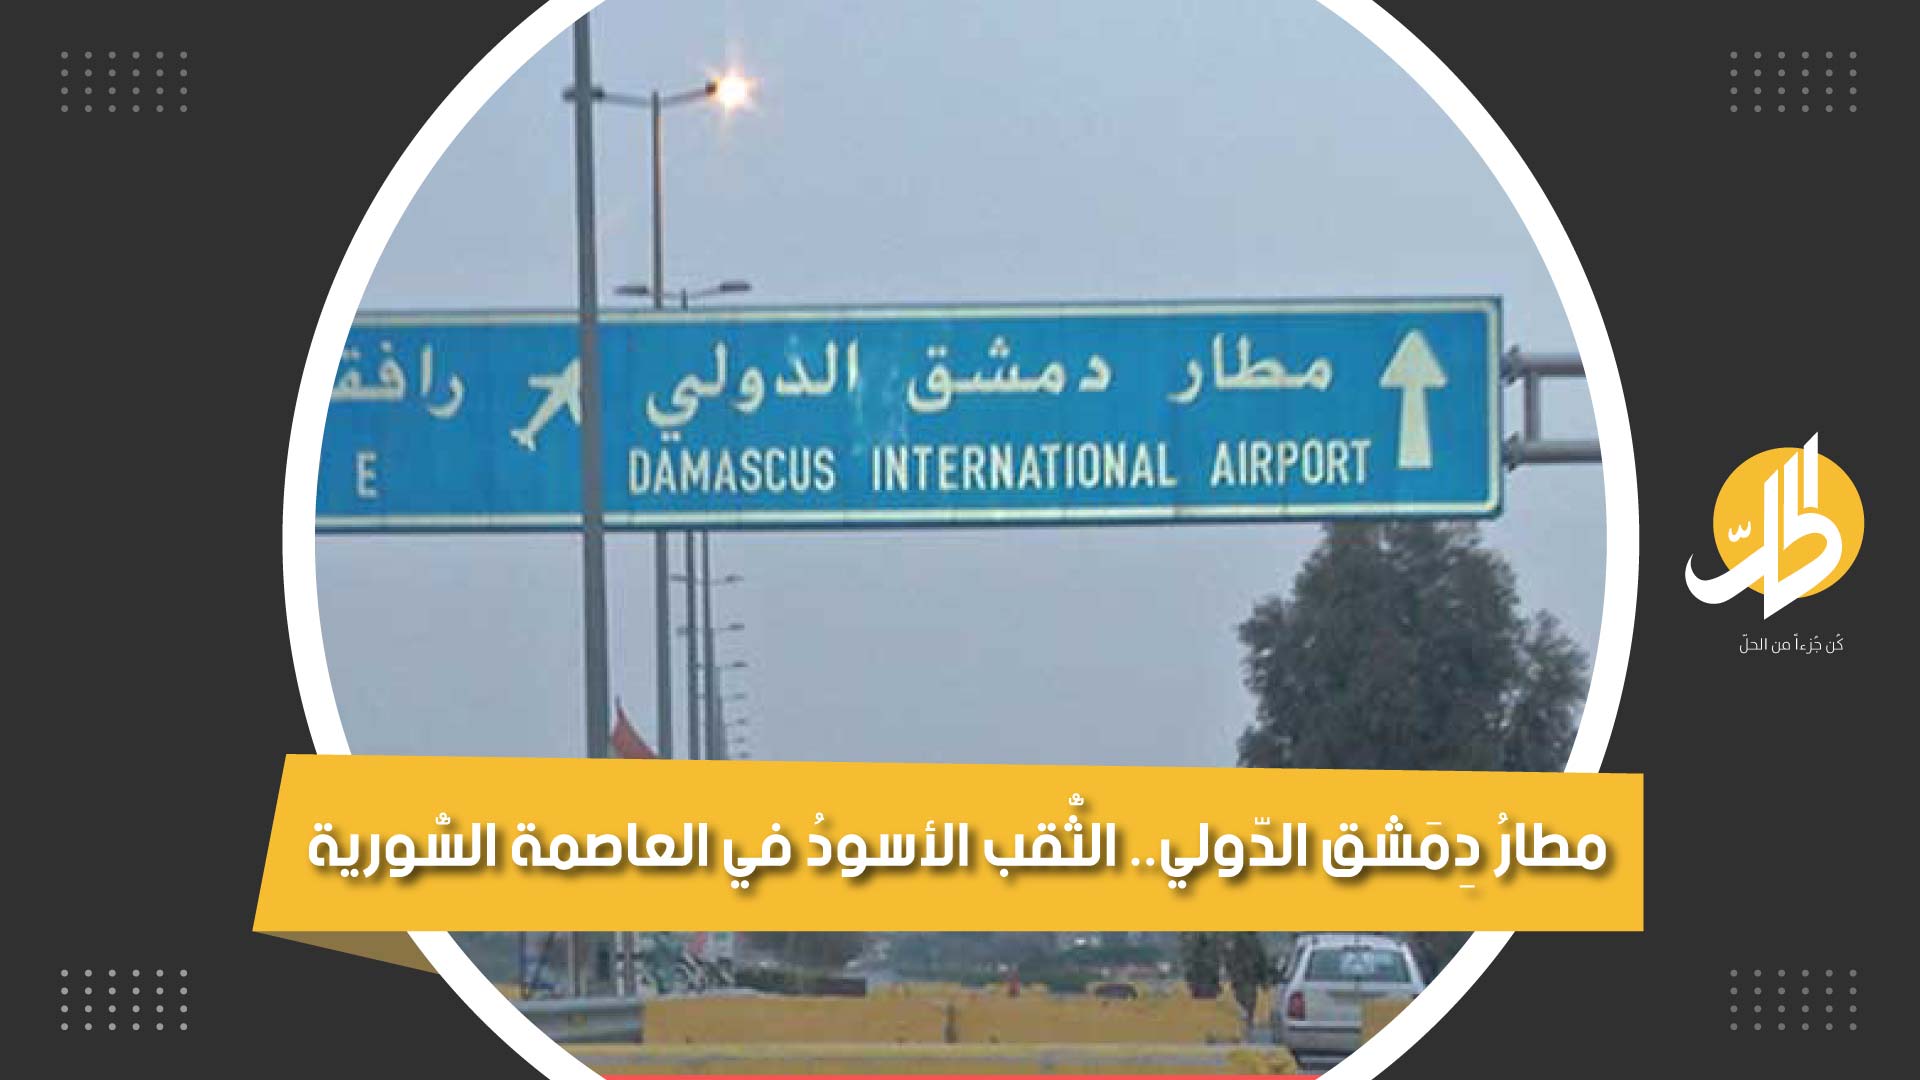 الثّقبُ الأسودُ في العاصمةِ السُّورية: مطار دمشق الدولي المُرعب.. ماذا تعرف عنه؟